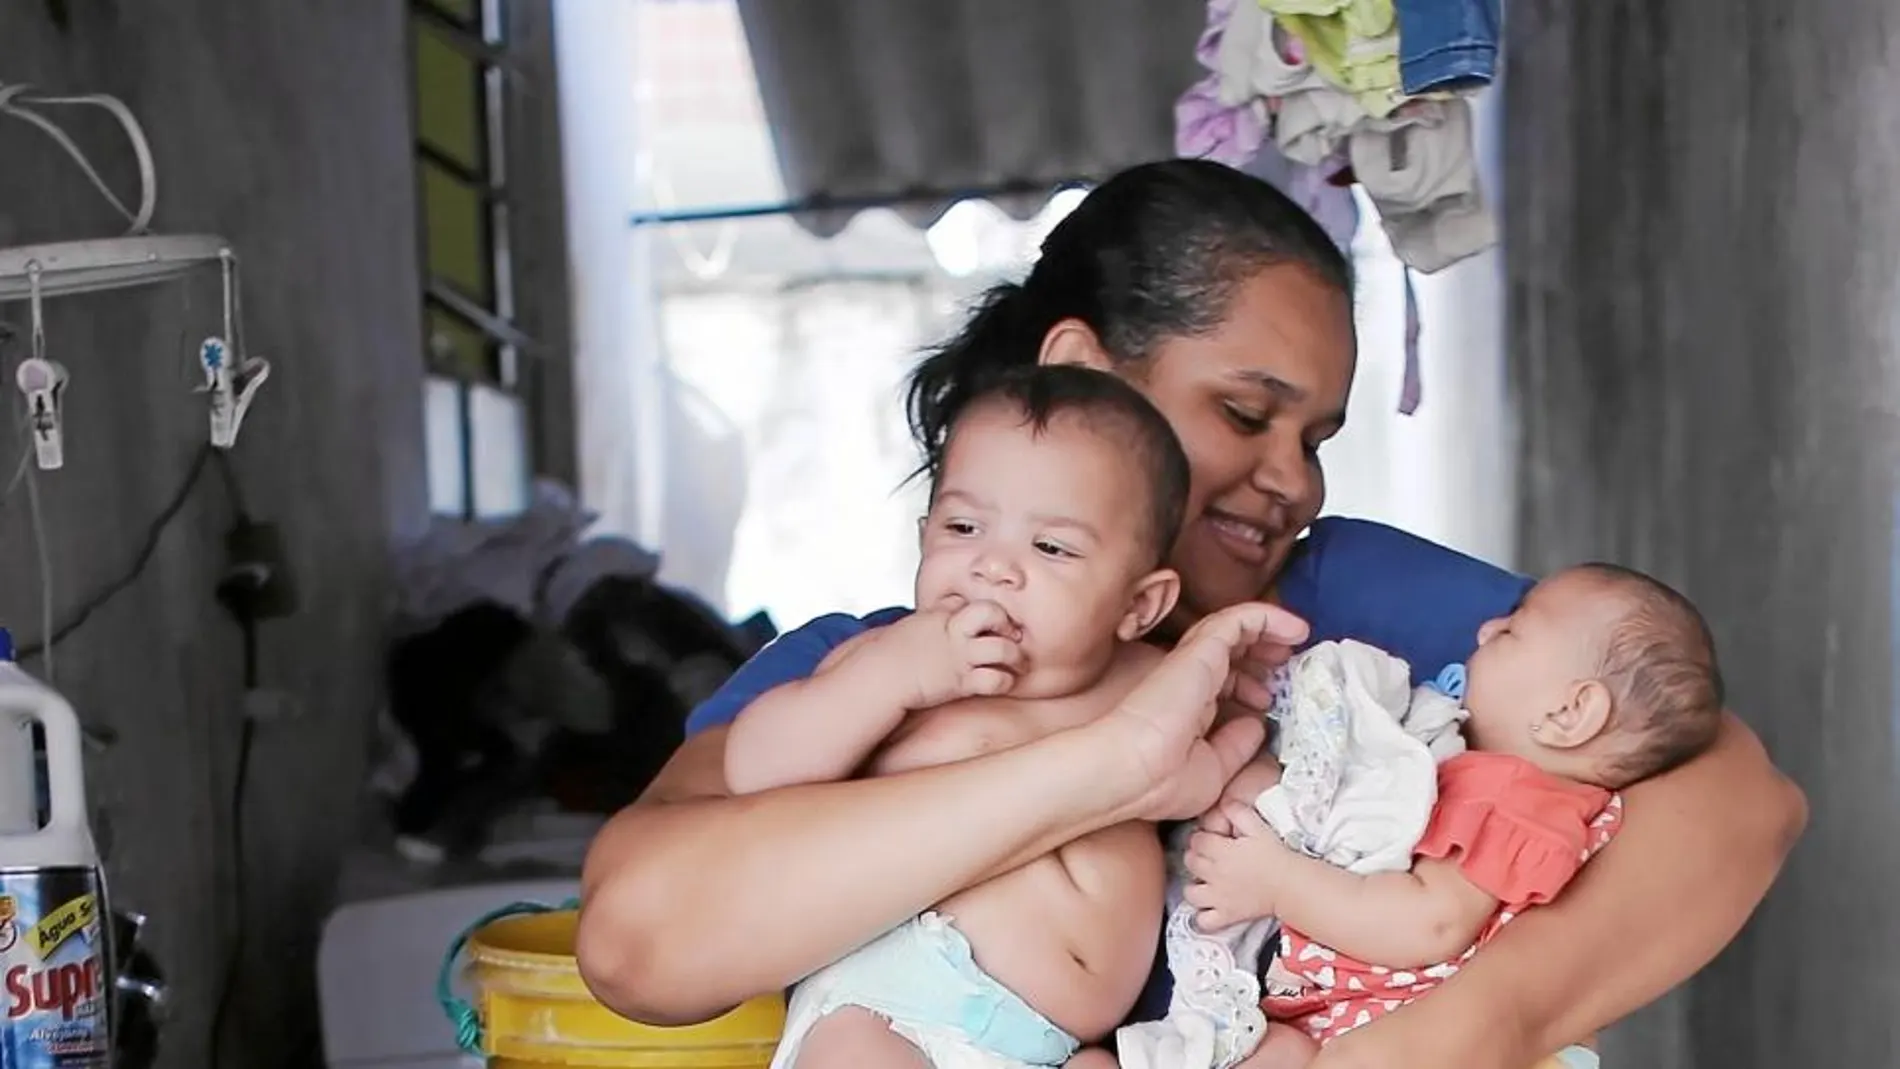 Jaqueline, de Brasil, padeció zika durante su embarazo. Ahora ha sido madre de mellizos: uno ha nacido sano y el otro, con microcefalia. En un principio pensó que el médico se había equivocado